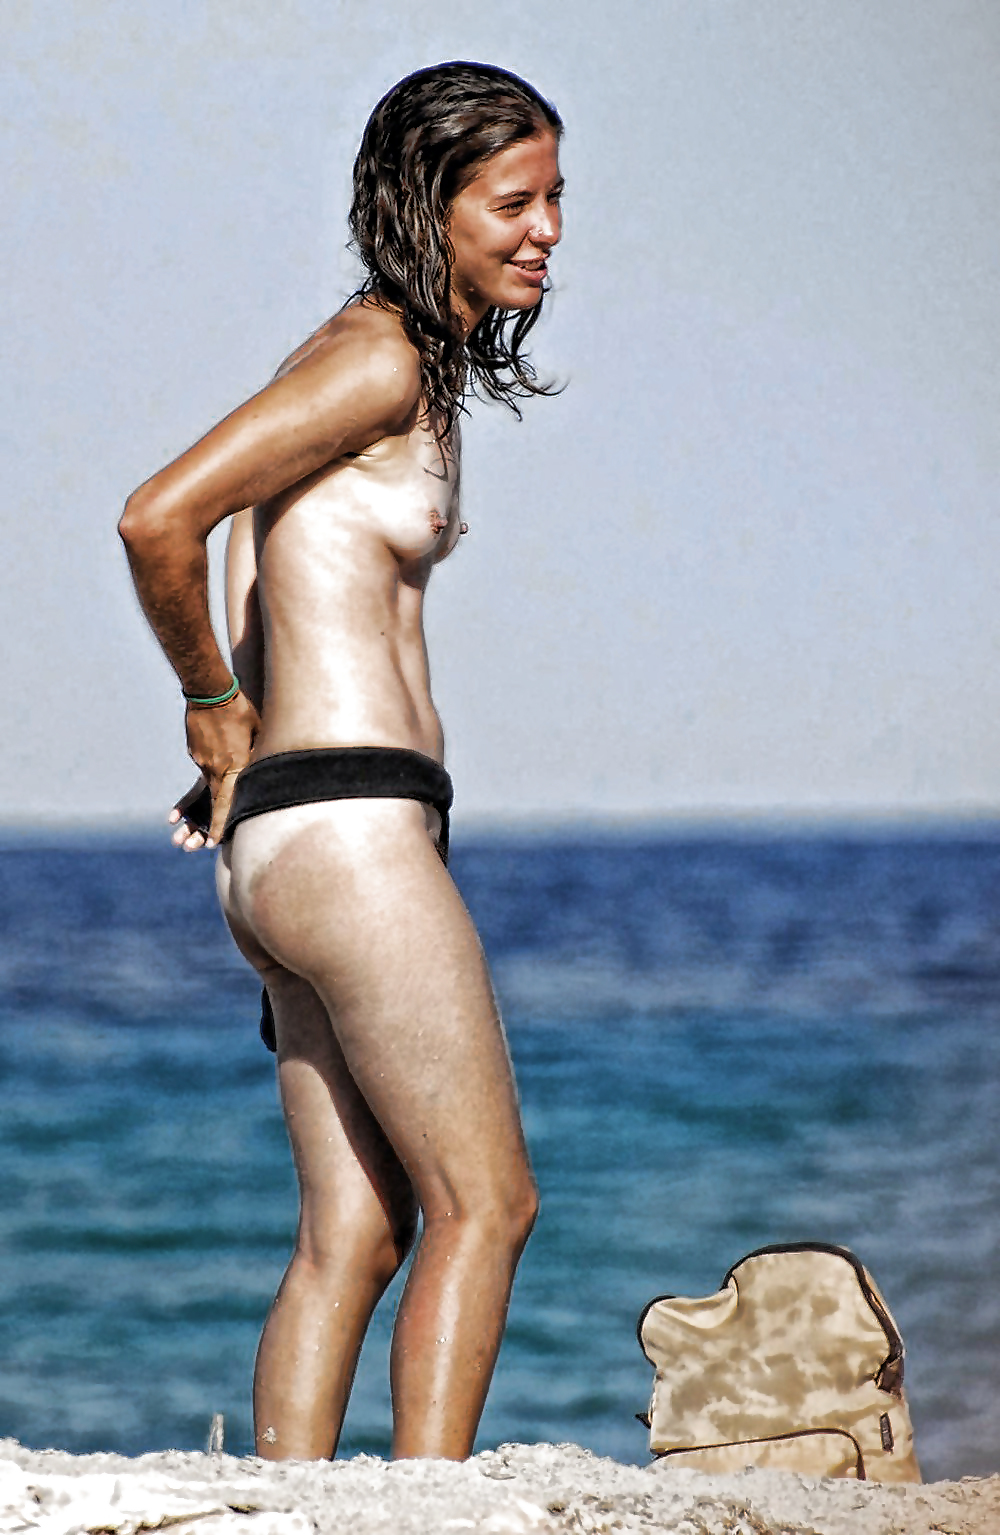 Free Photoshop fun ( naked on the beach ) photos